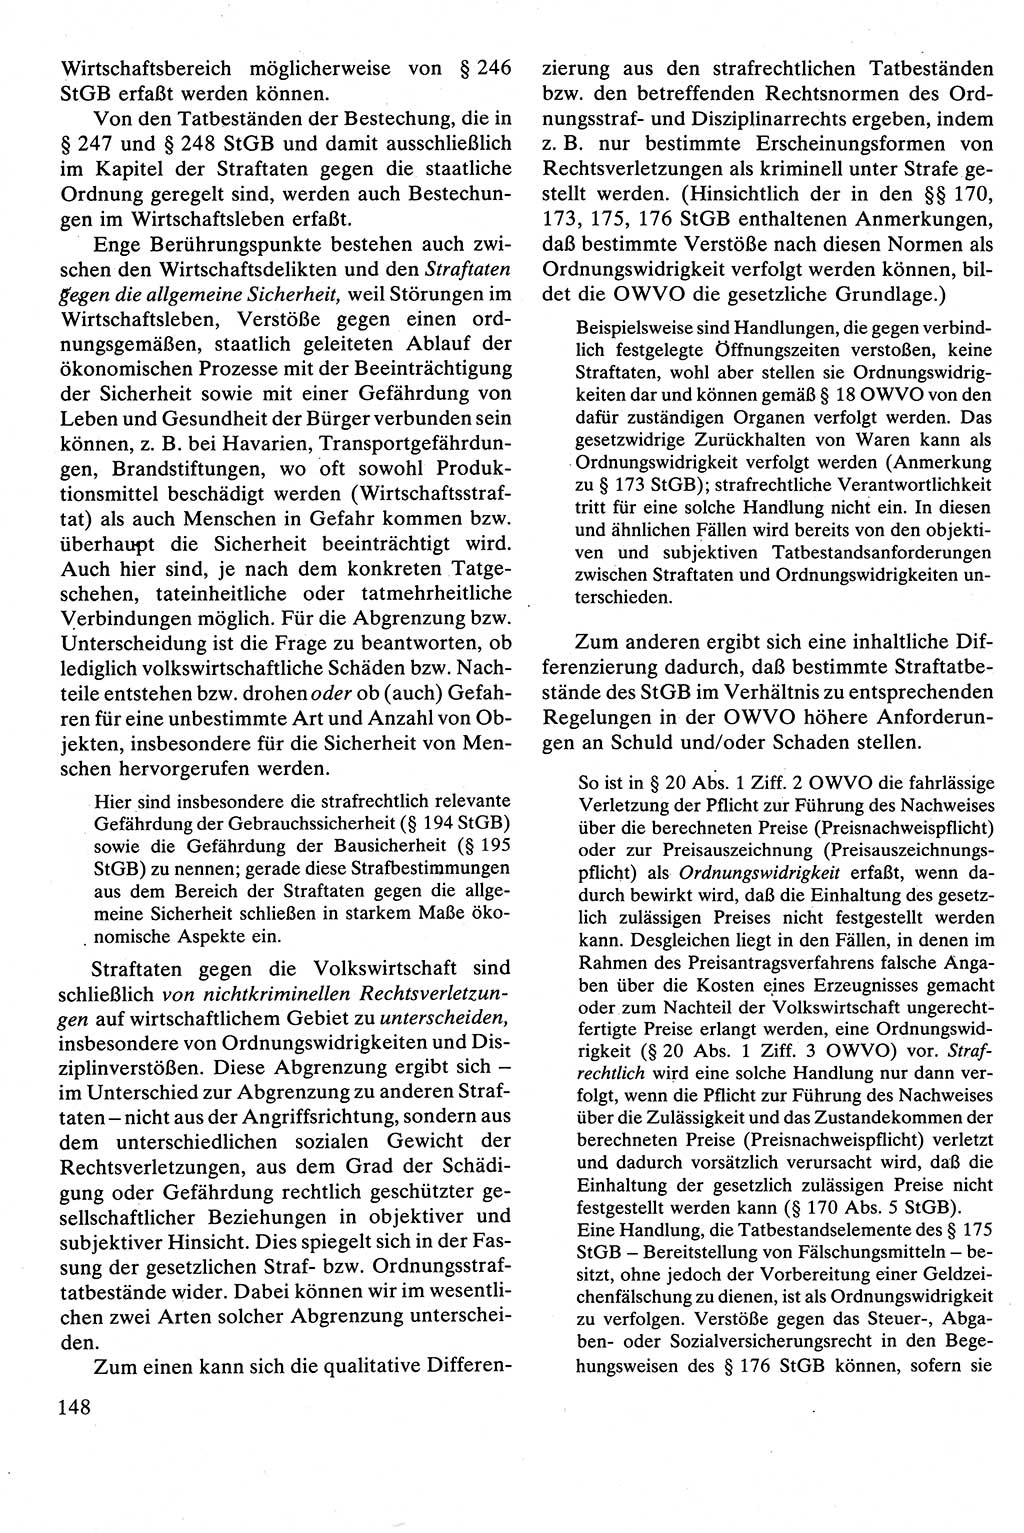 Strafrecht [Deutsche Demokratische Republik (DDR)], Besonderer Teil, Lehrbuch 1981, Seite 148 (Strafr. DDR BT Lb. 1981, S. 148)